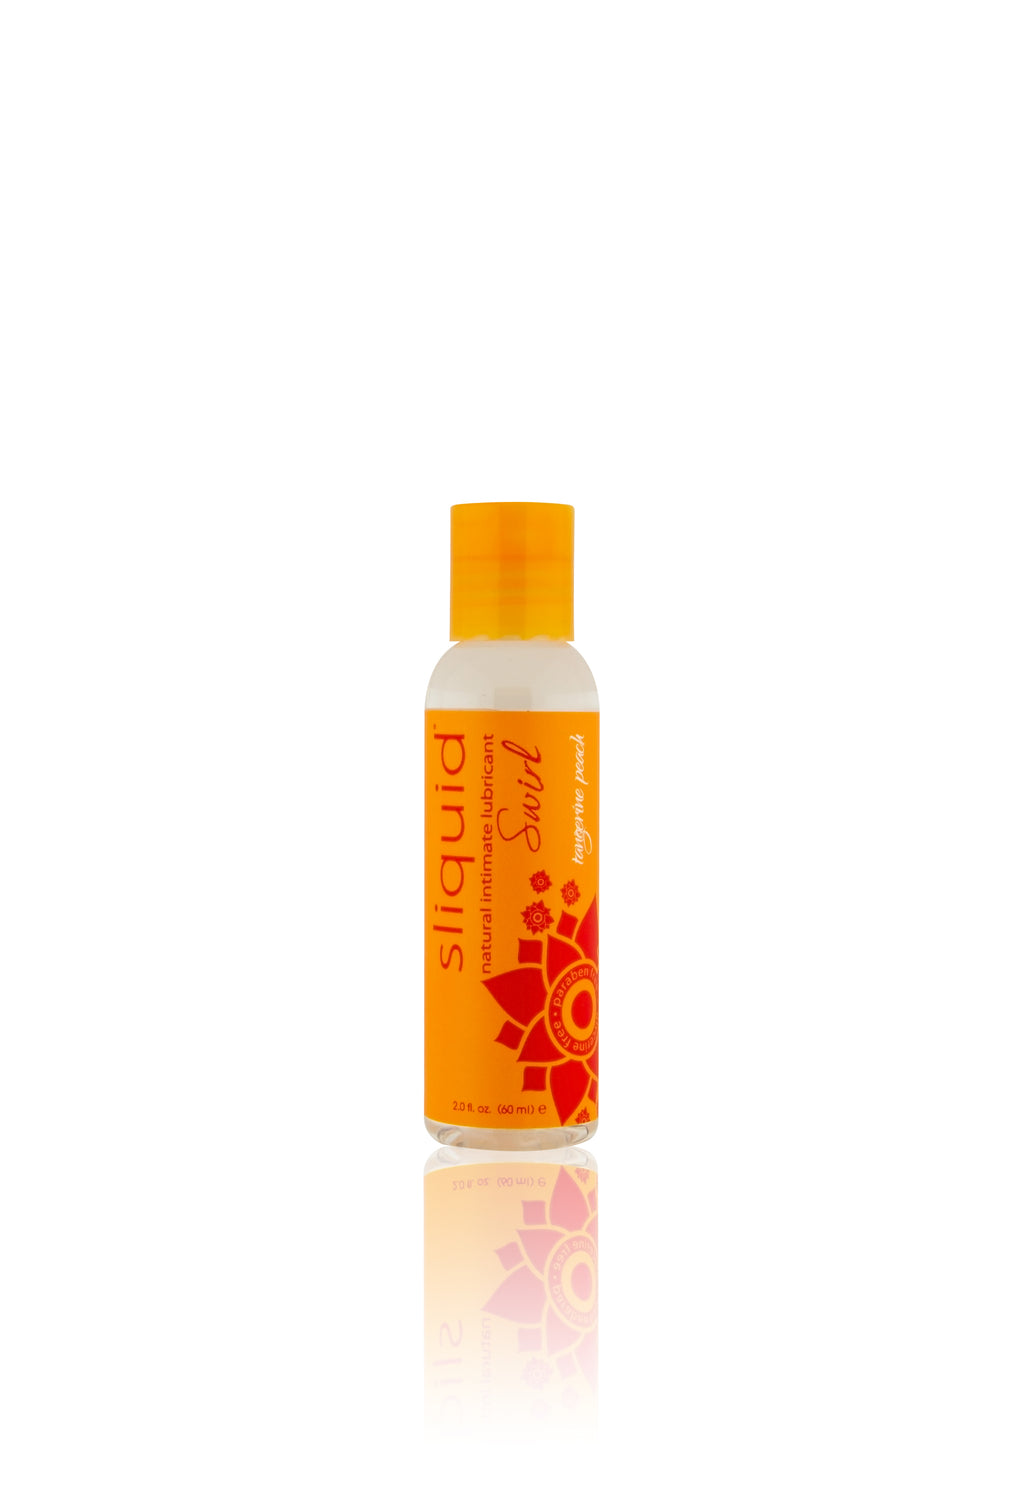 Naturals Swirl - Tangerine Peach - 2.0 Fl. Oz (59 ml) SLIQ027